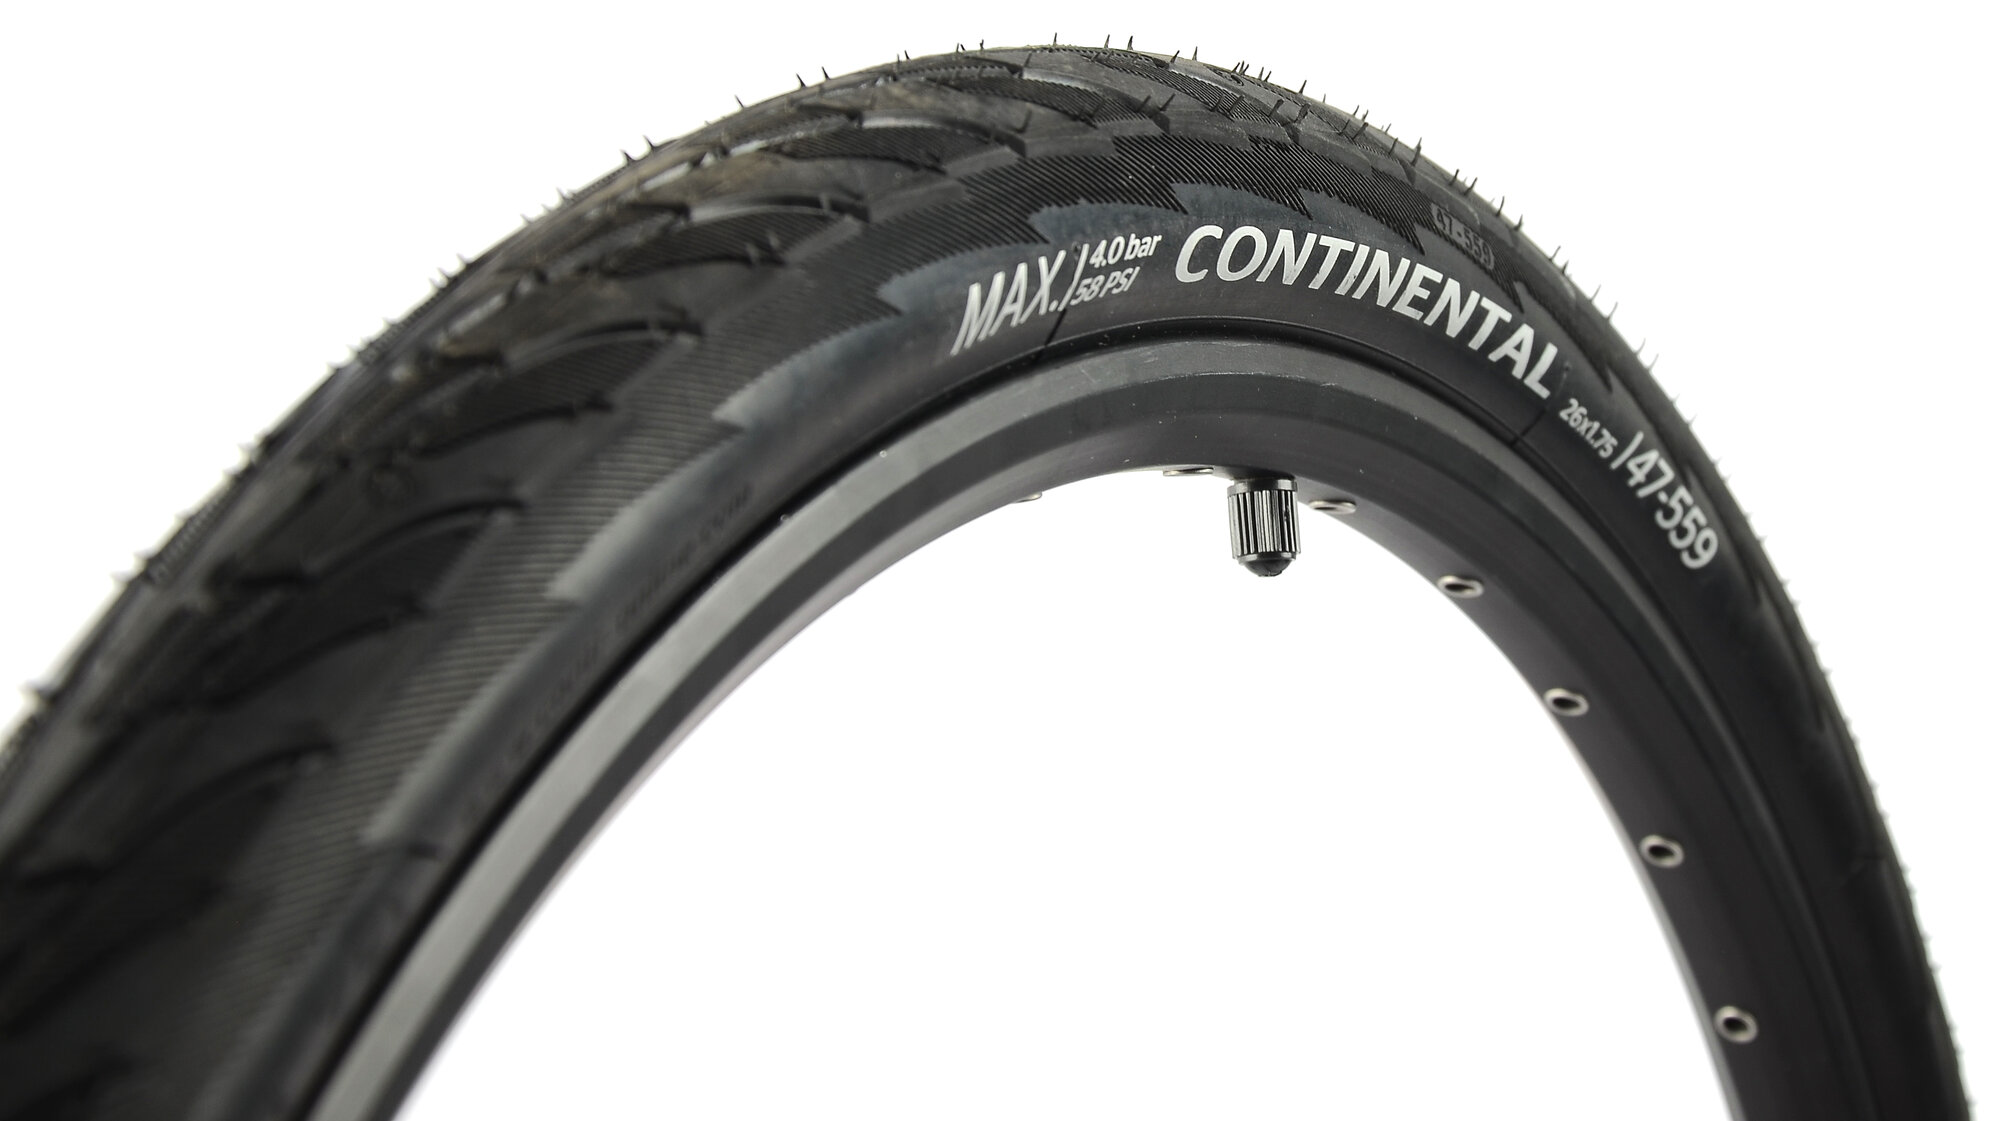 Покрышка для велосипеда Continental Contact 26"x1.75 (47-559), MAX BAR 4, PSI 58, жесткий корд, антипрокольный слой, черная